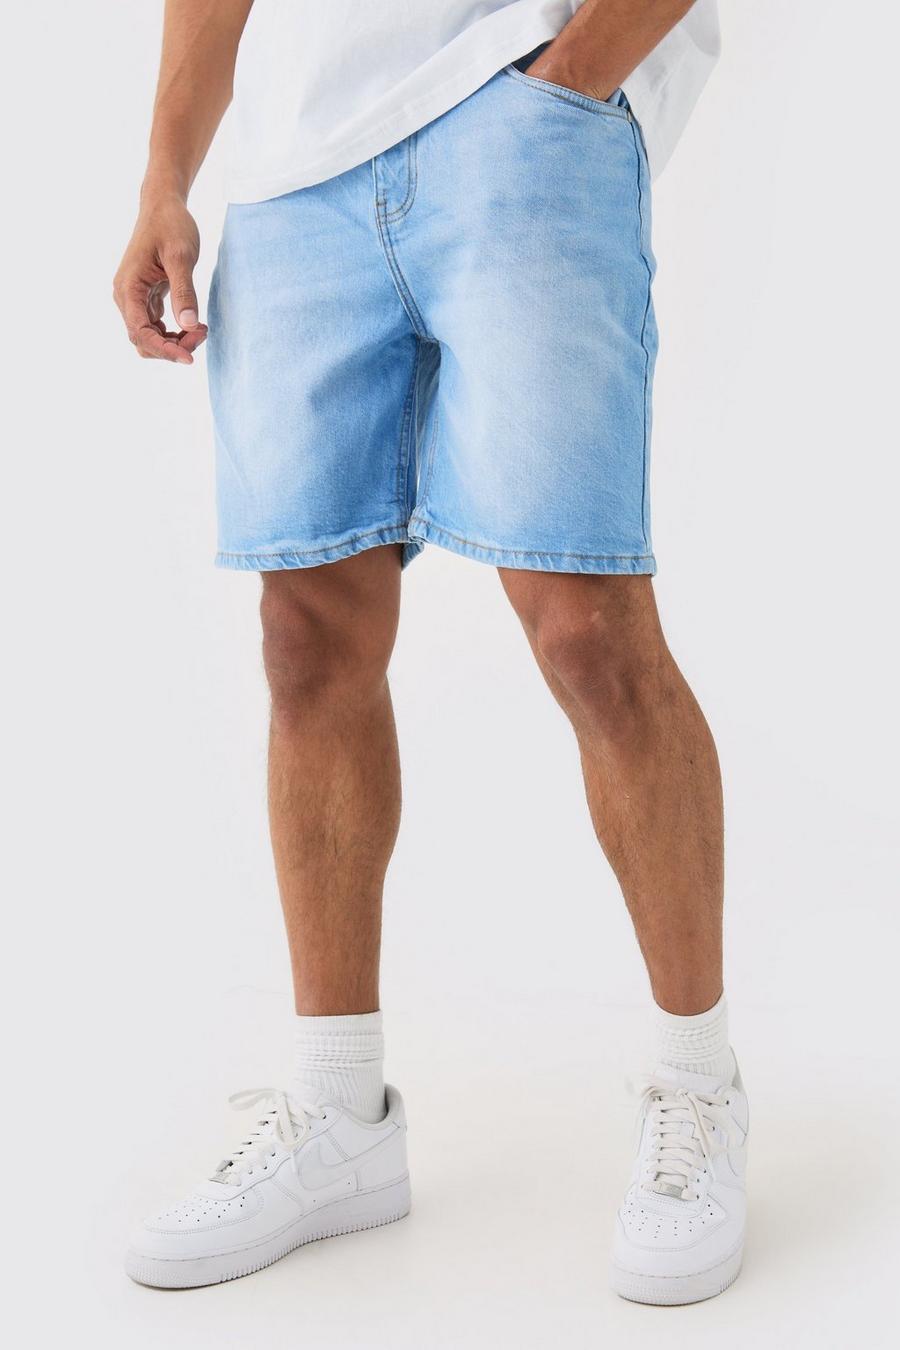 Pantalones cortos vaqueros holgados sin tratar en azul claro, Light blue image number 1